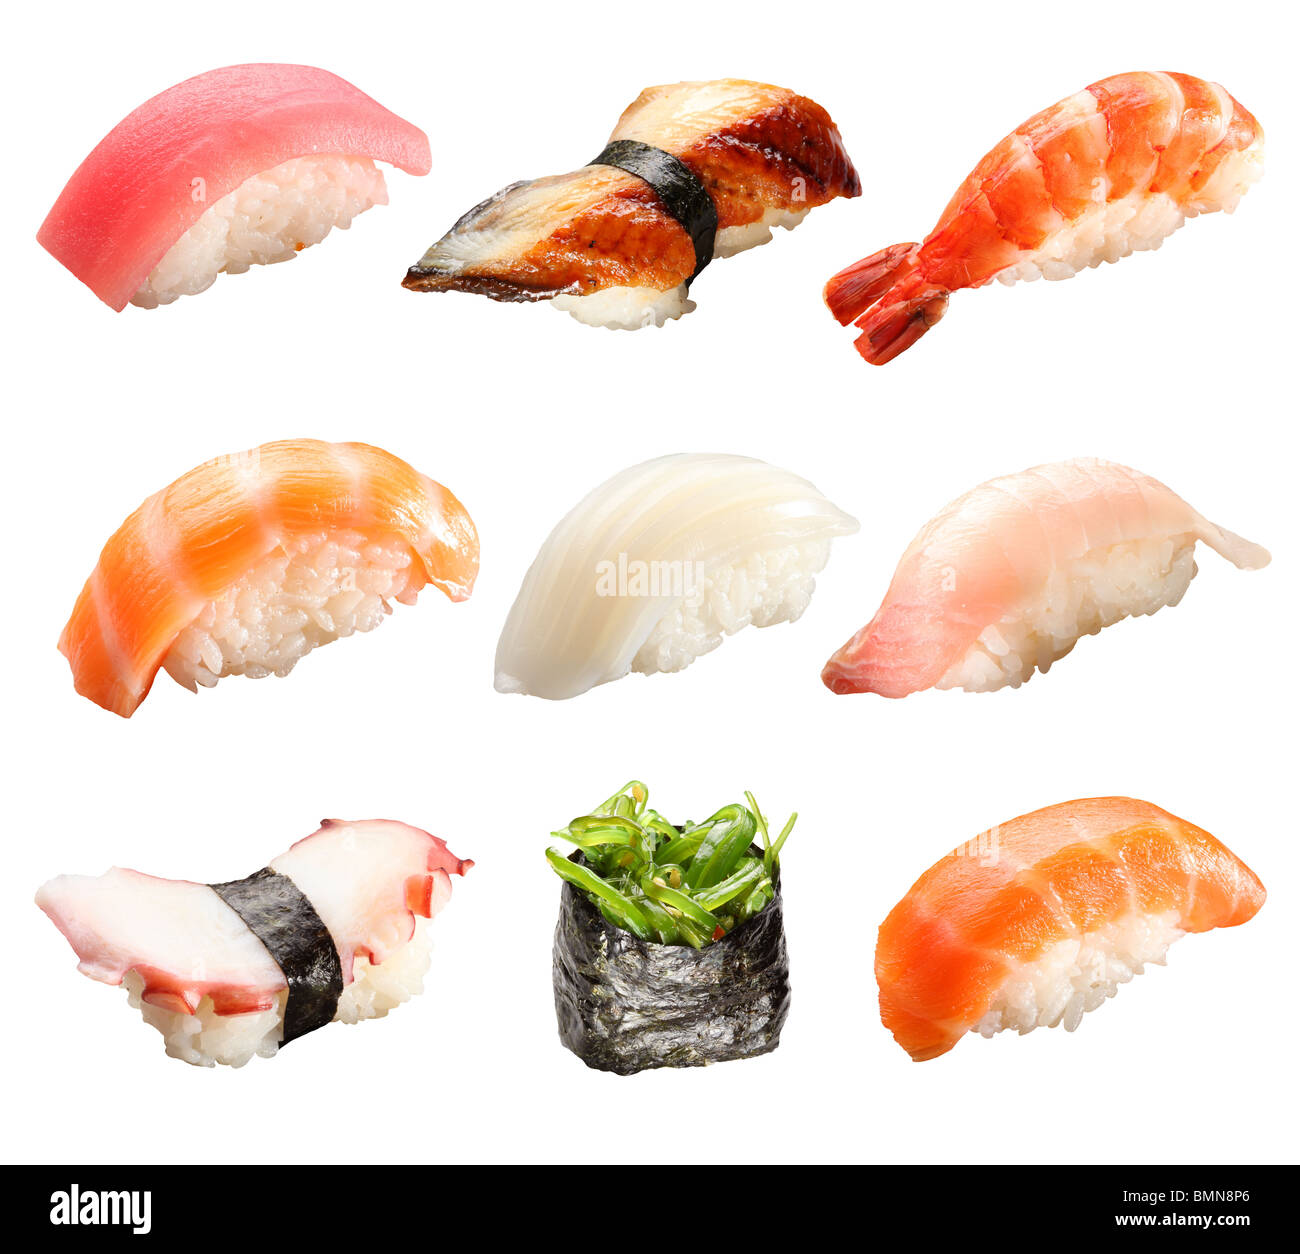 Japanese sushi isolated on a white background Stock Photo